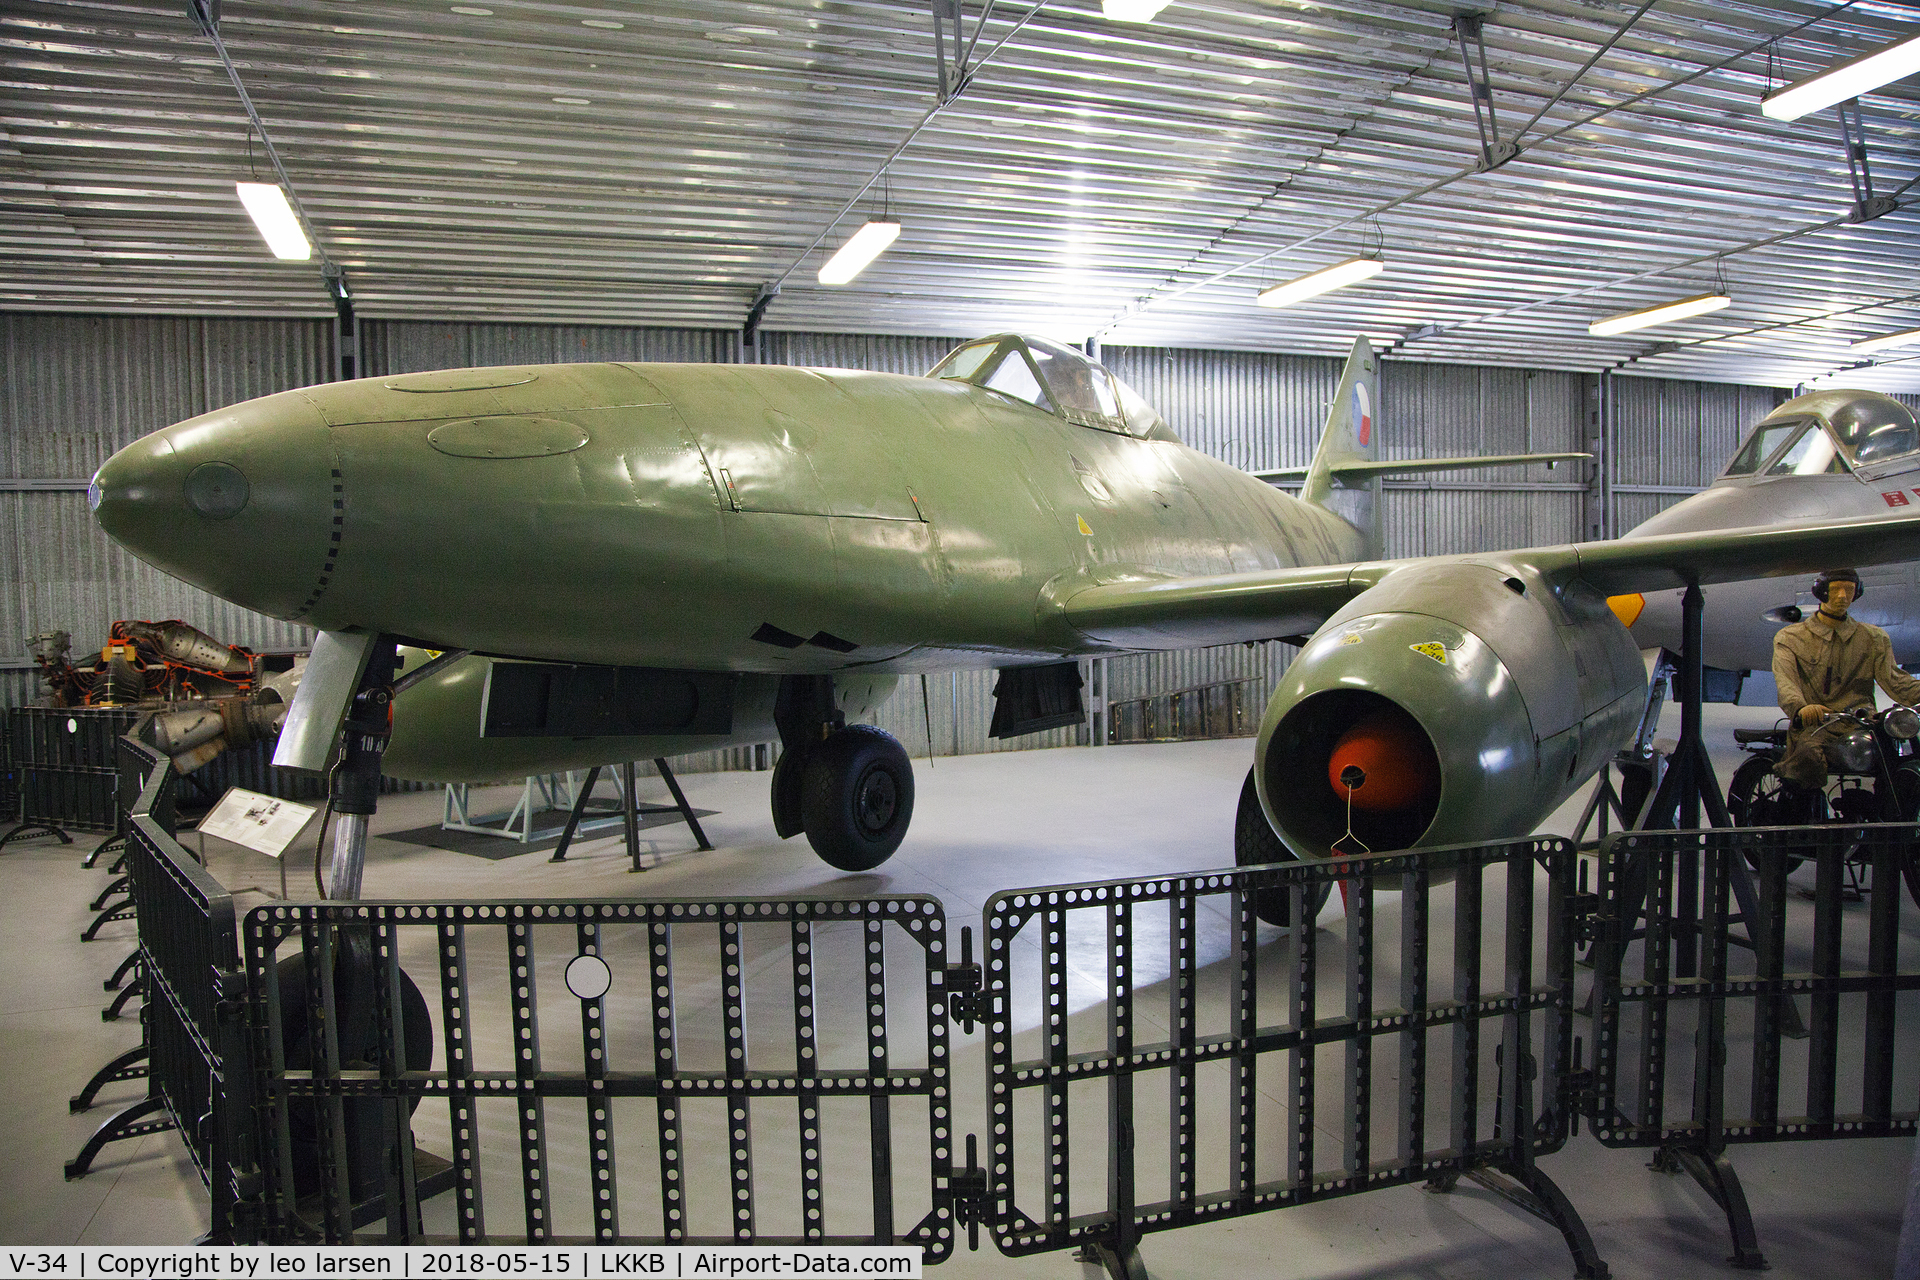 V-34, 1946 Avia S-92 C/N 4, Kbely Air Museum 15.5.2018